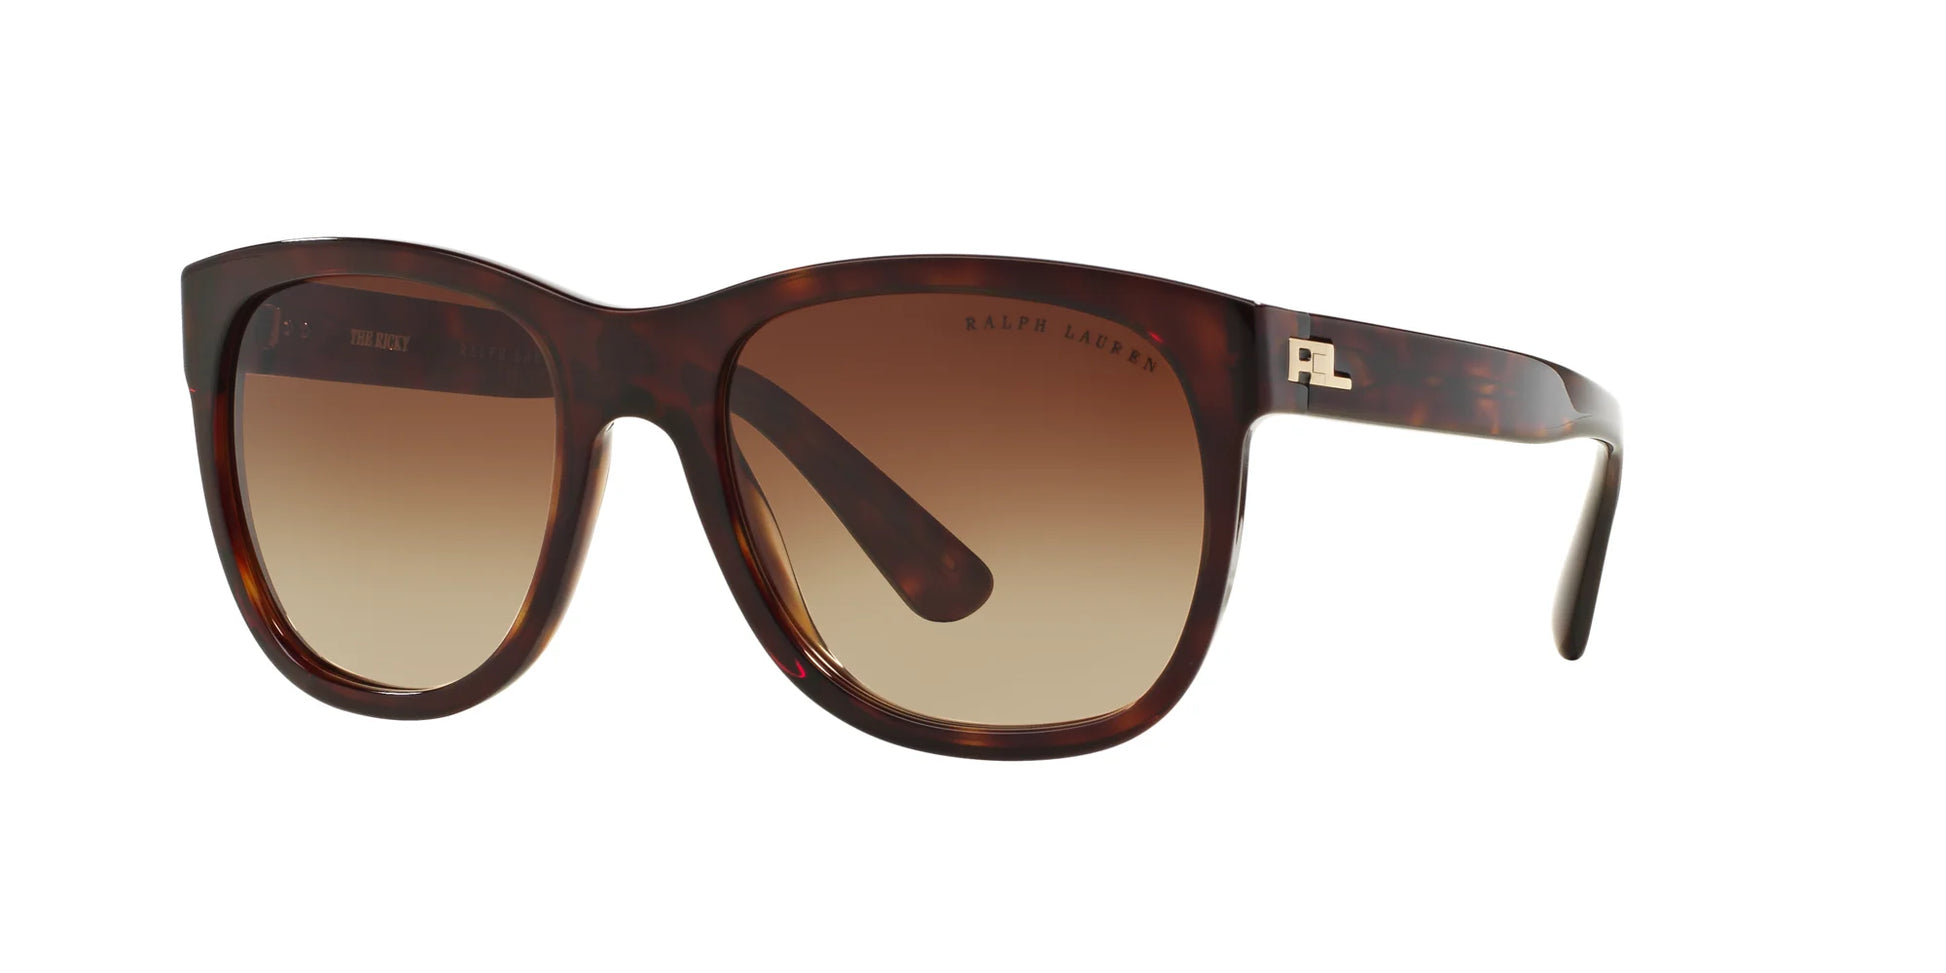 Ralph Lauren RL8141 Sunglasses Shiny Dark Havana / Gradient Brown